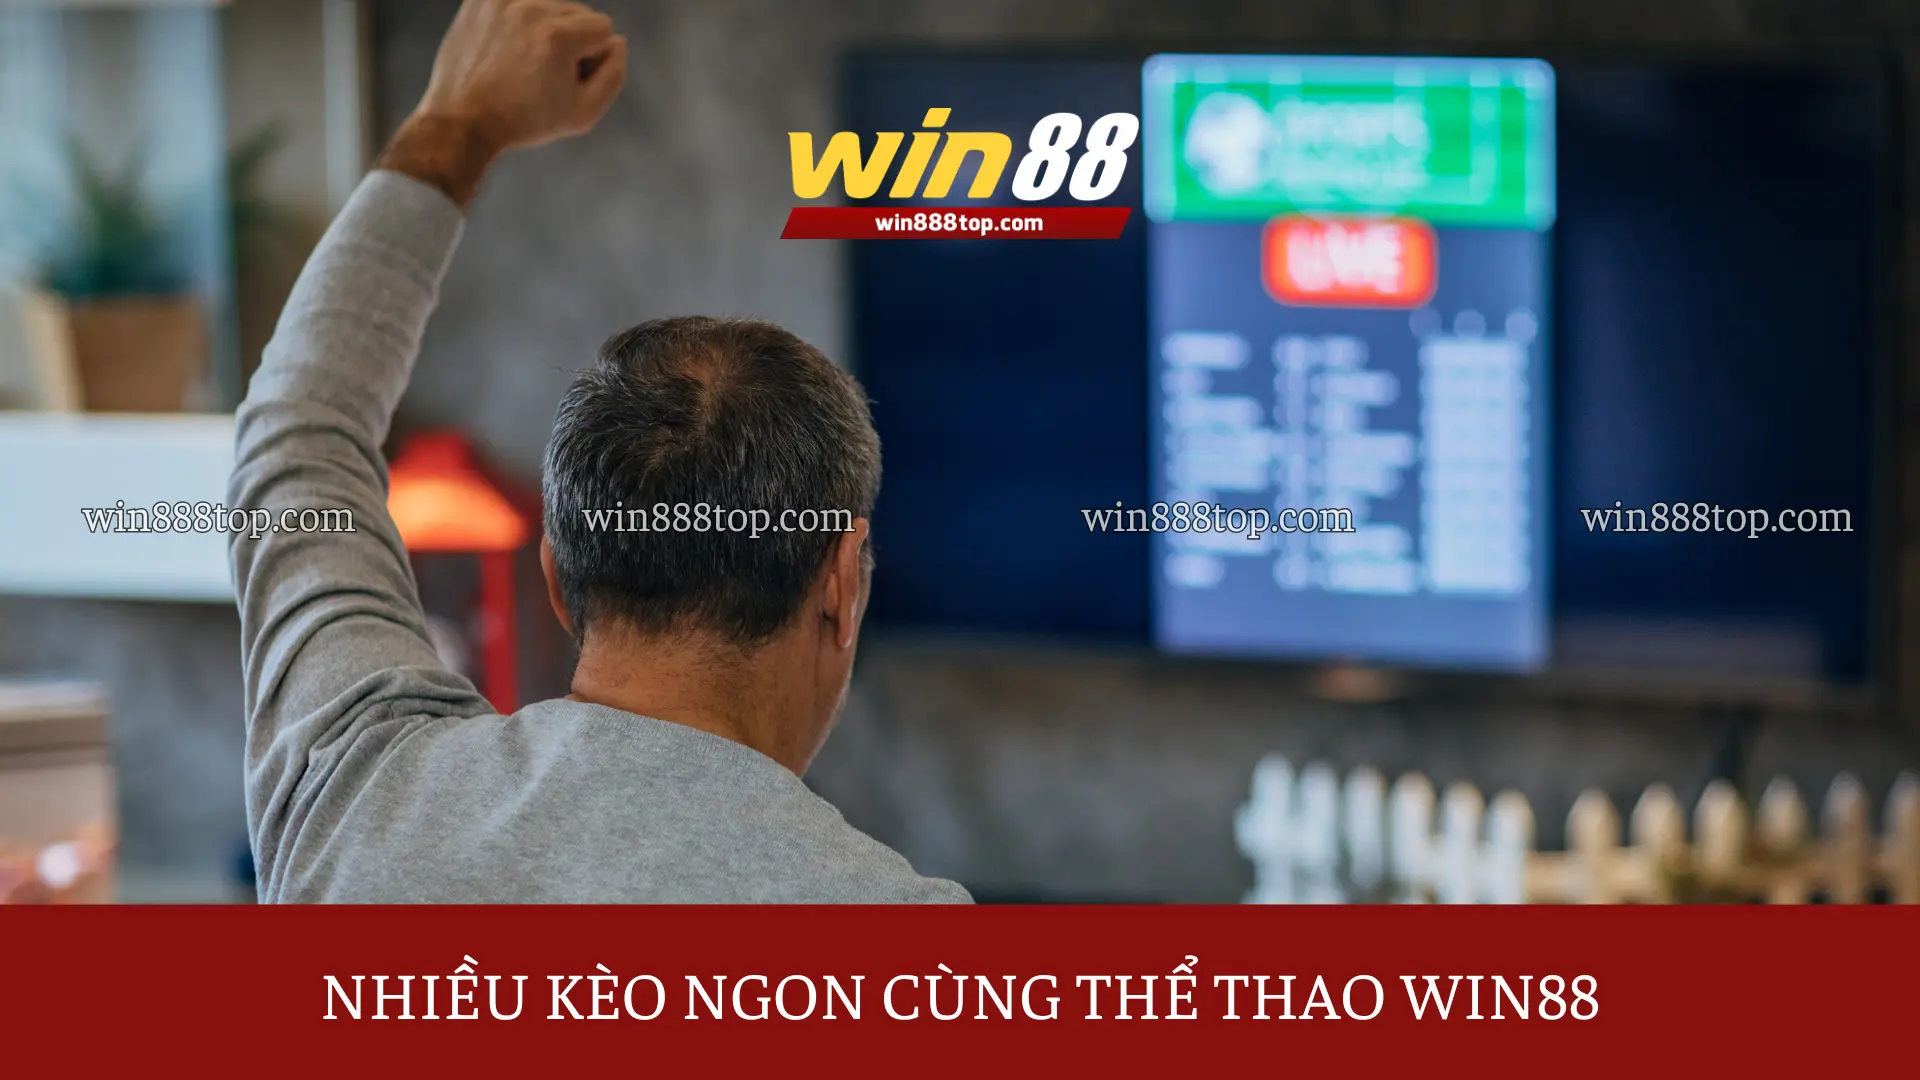 the-thao-win88-da-dang-keo